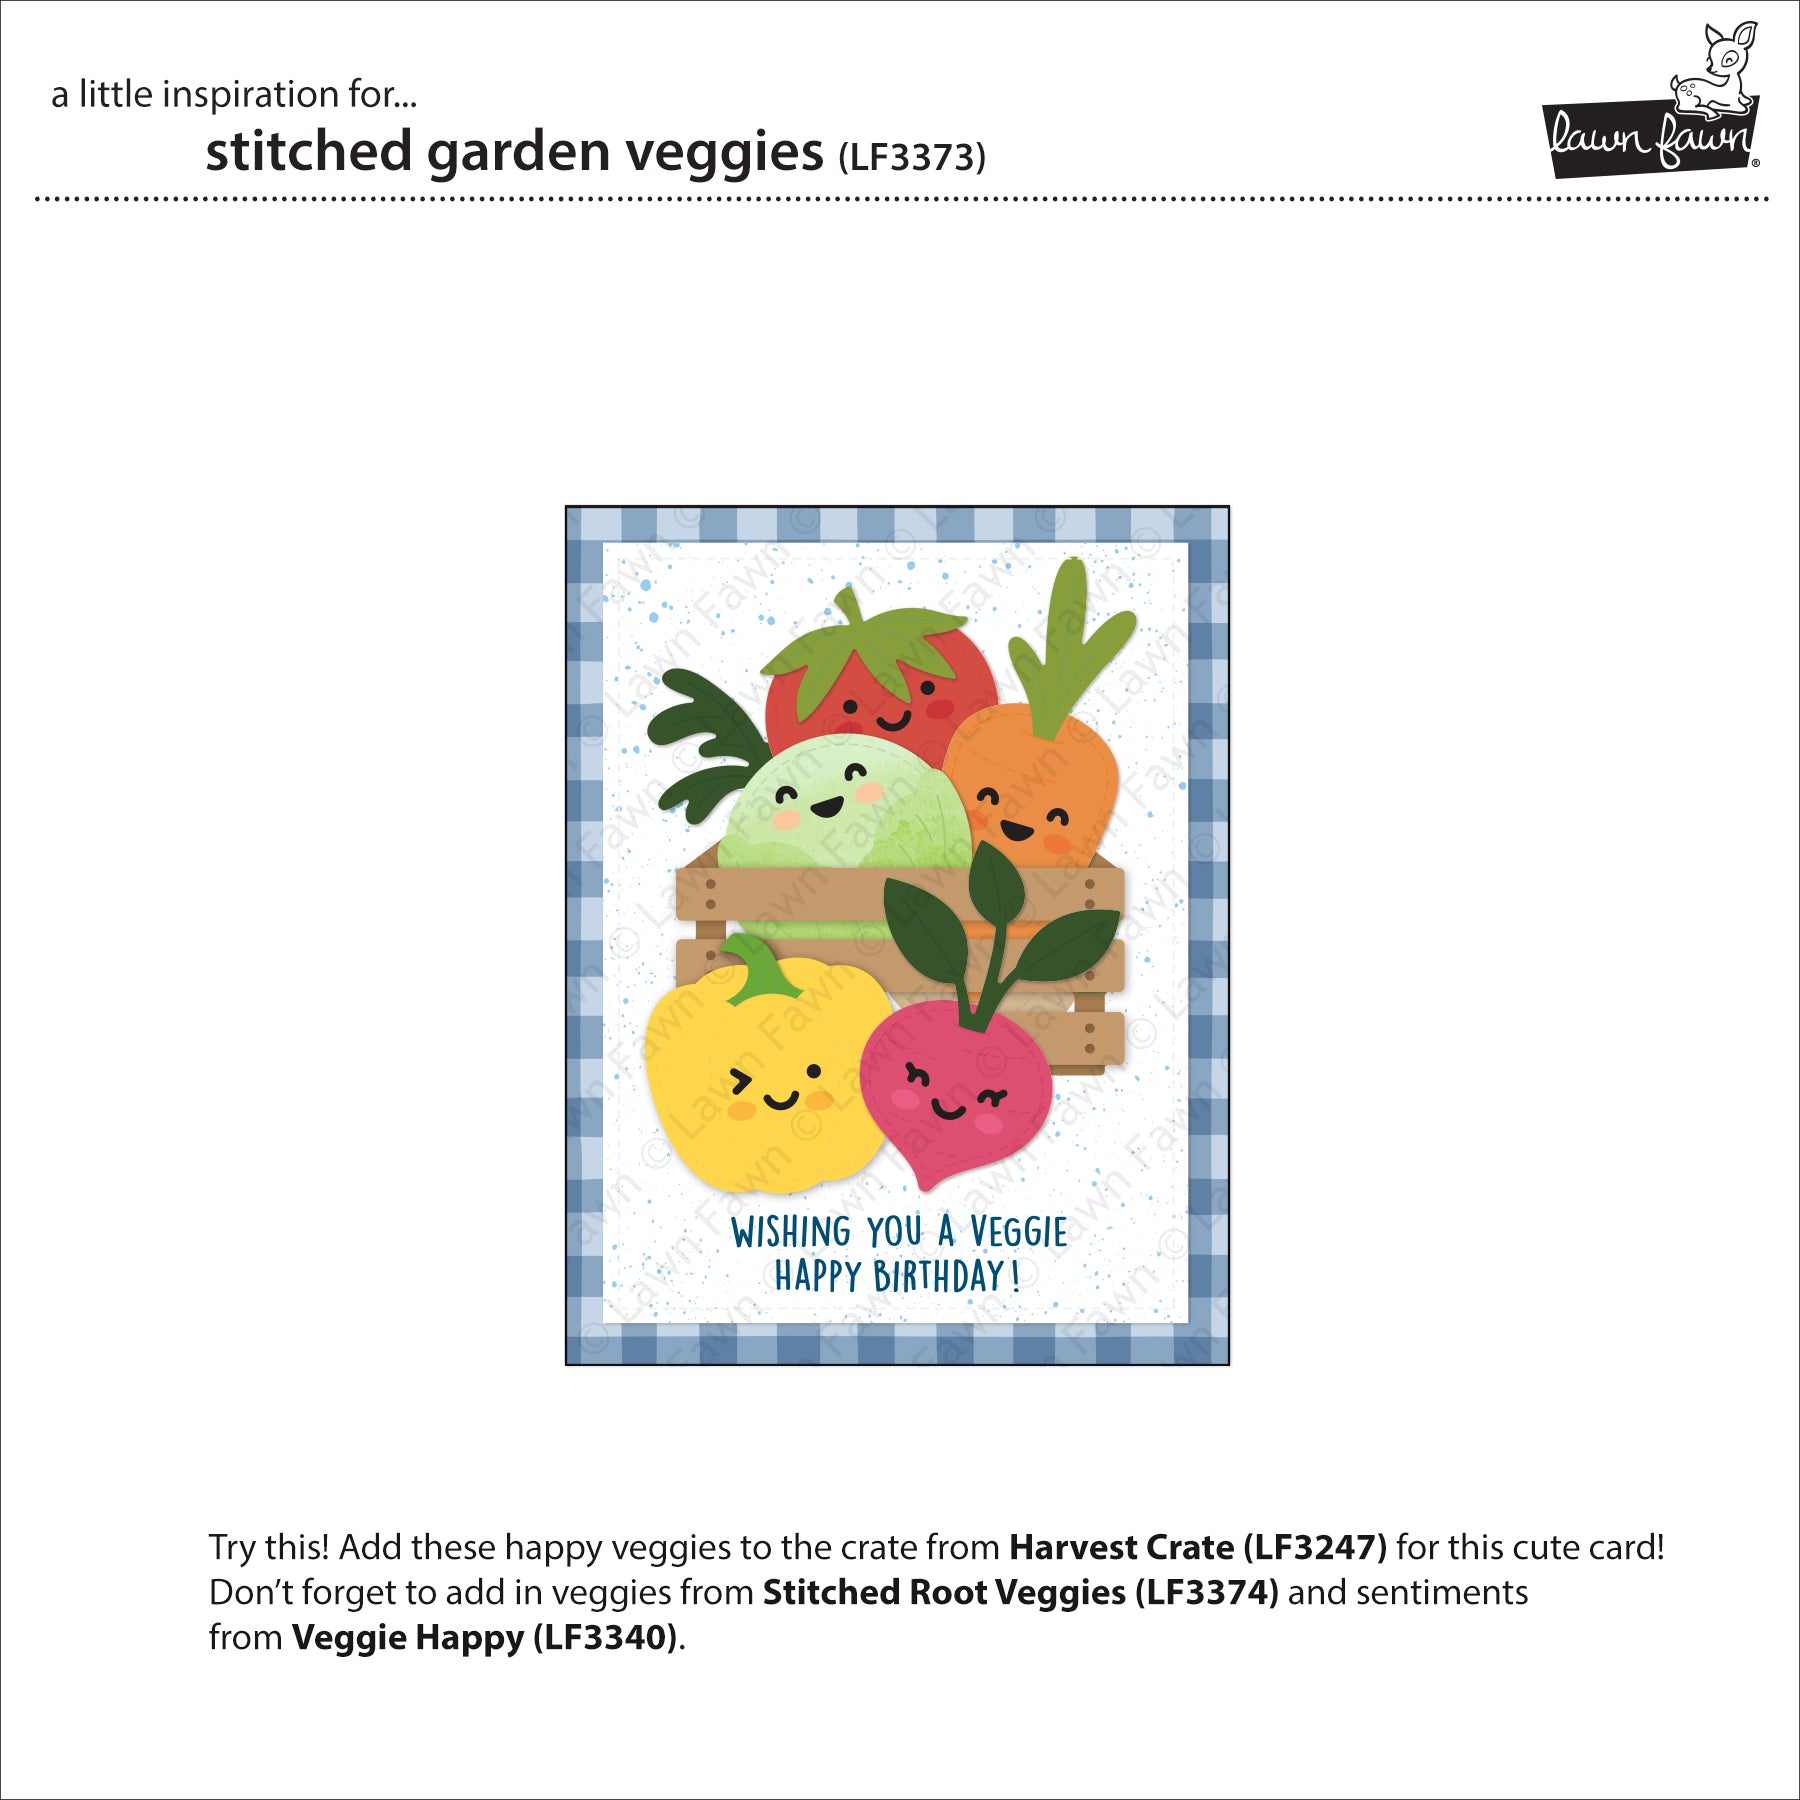 stitched garden veggies